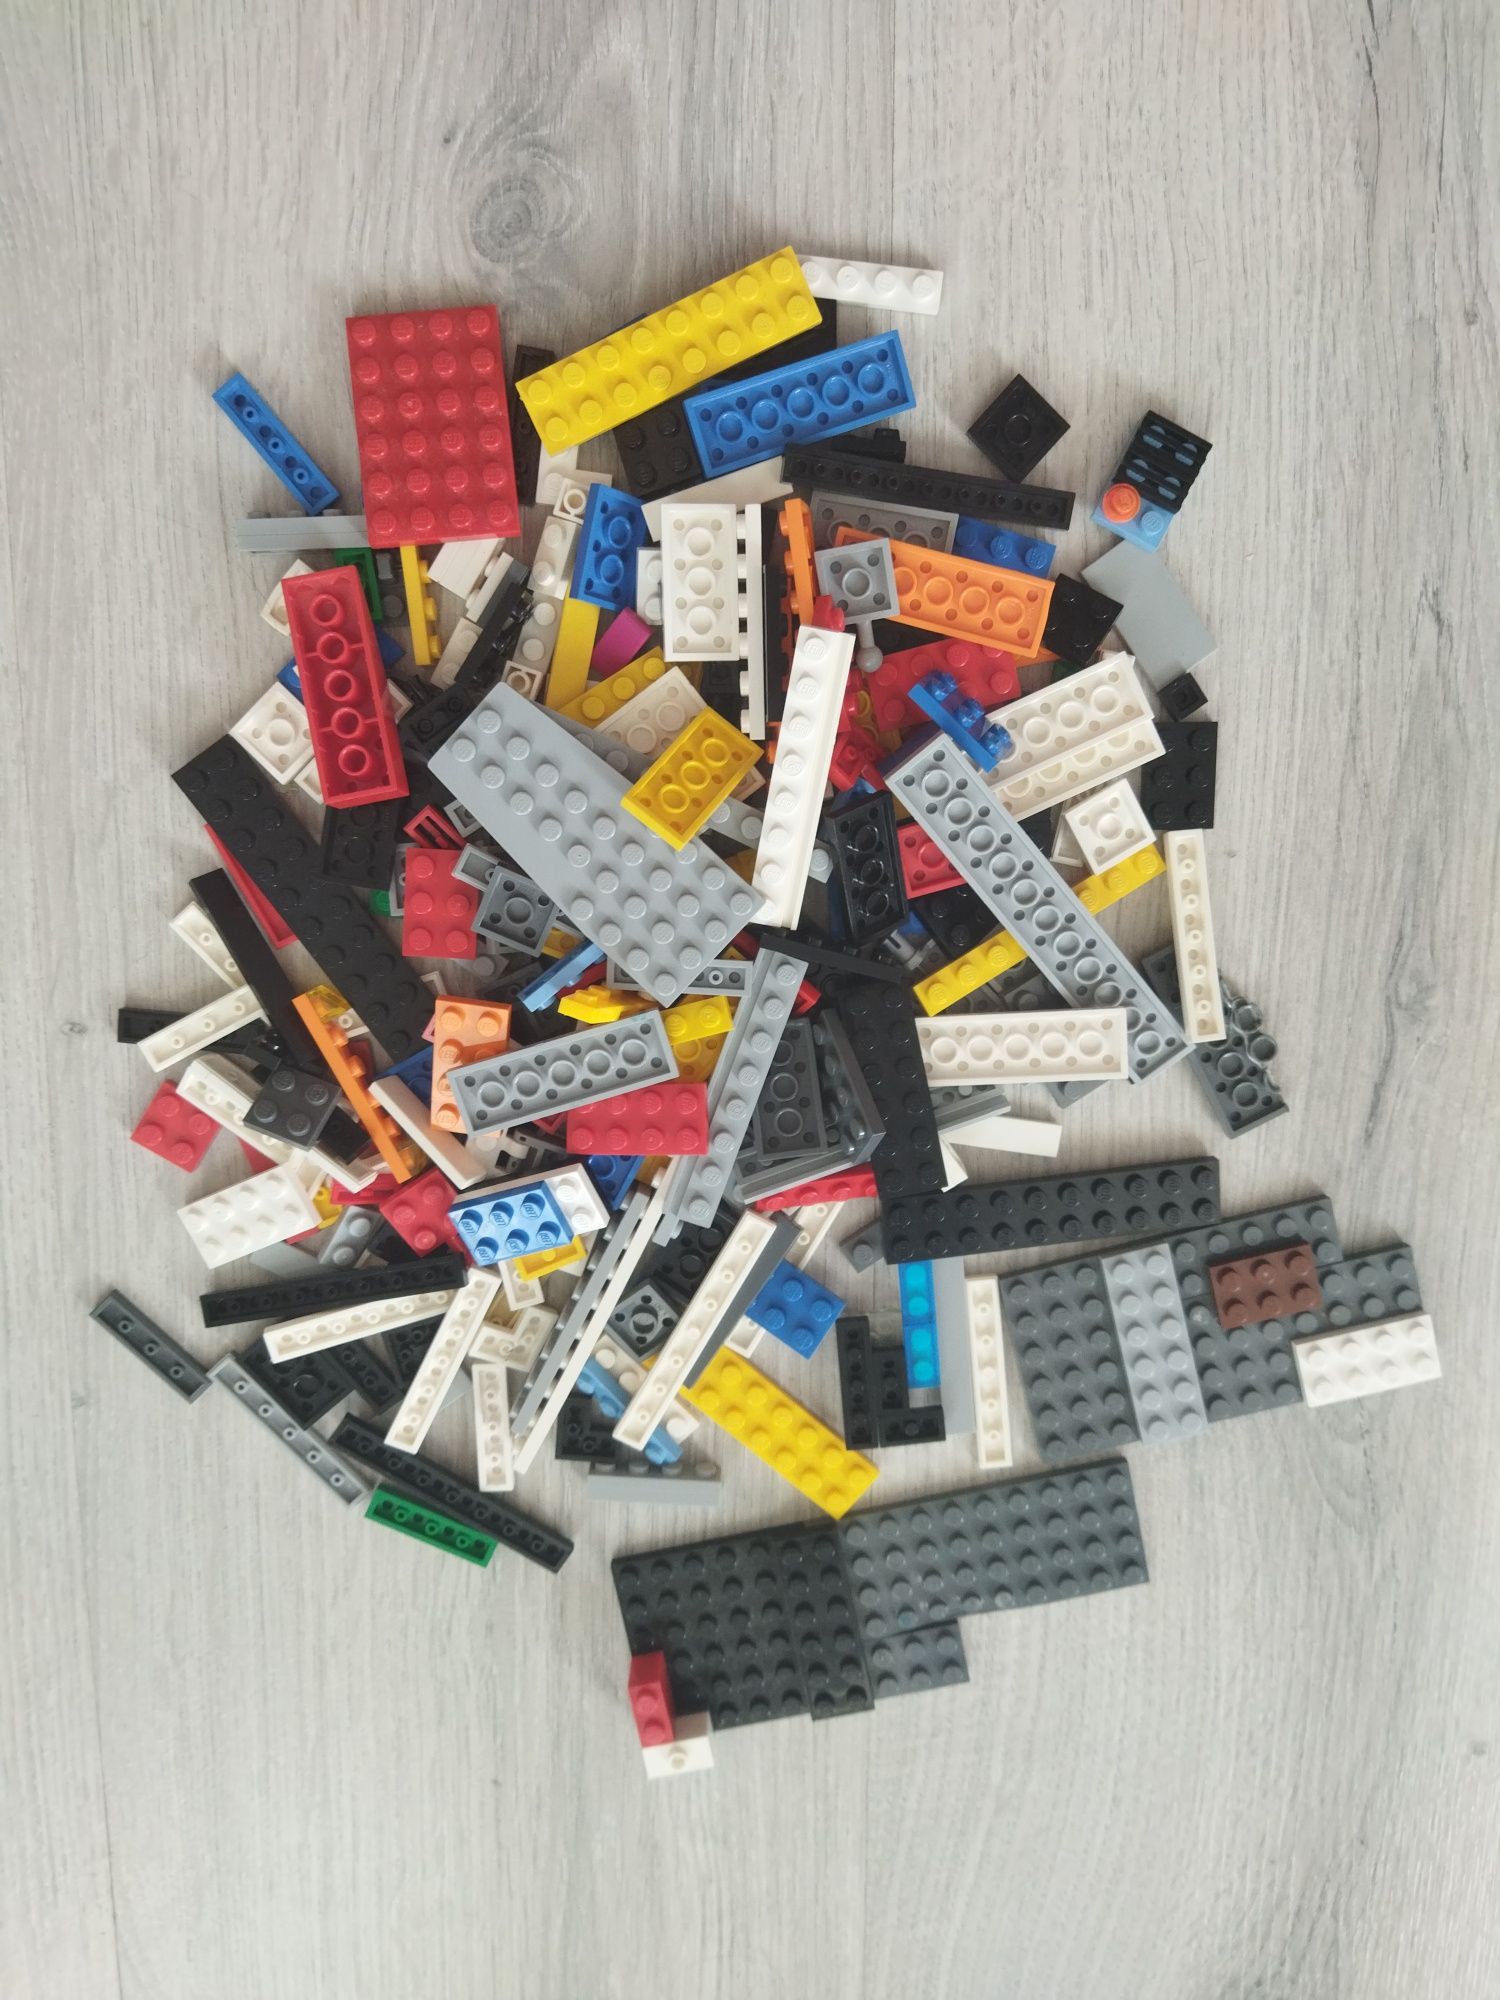 Детали от разных конструкторов LEGO/Лего